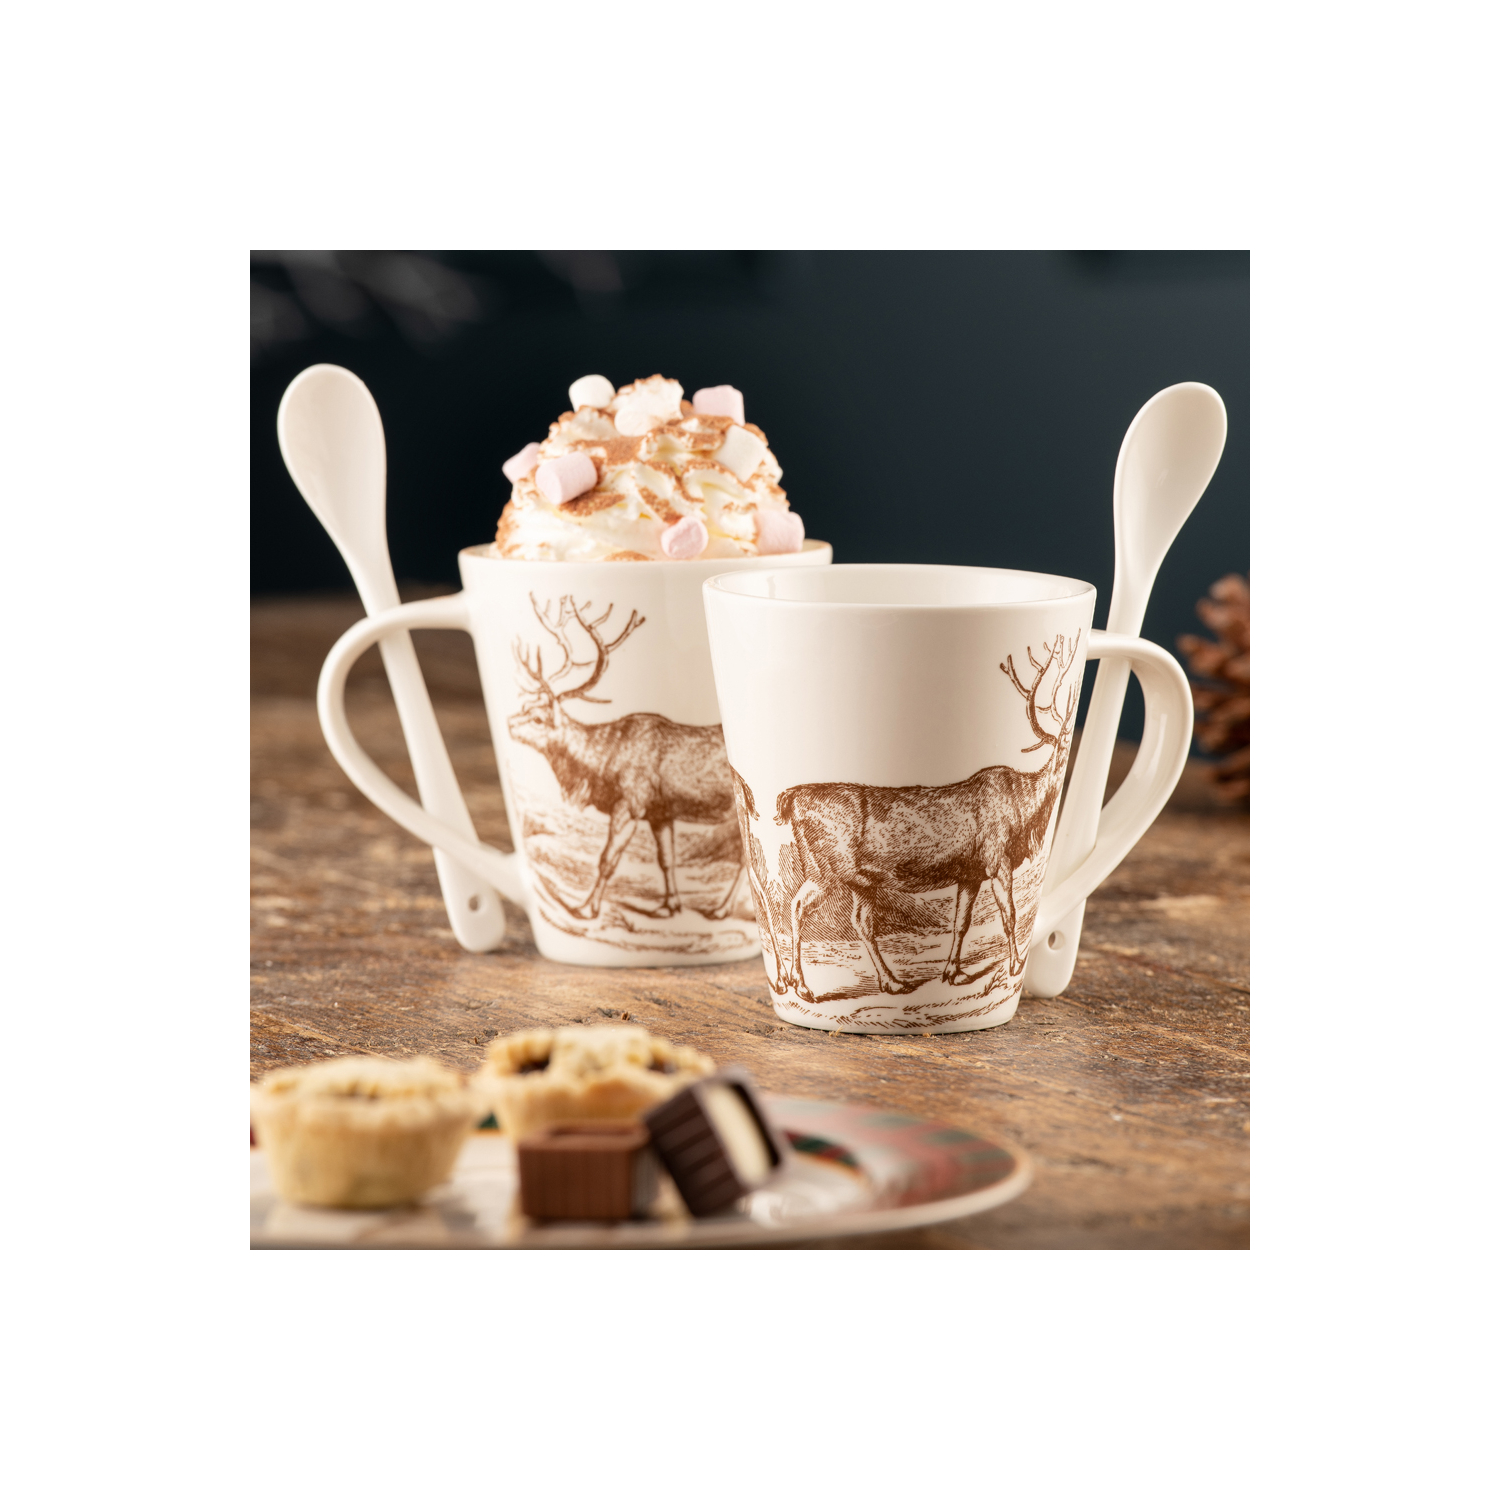 Hot Chocolate Reindeer Mugs & Spoons Set of 2